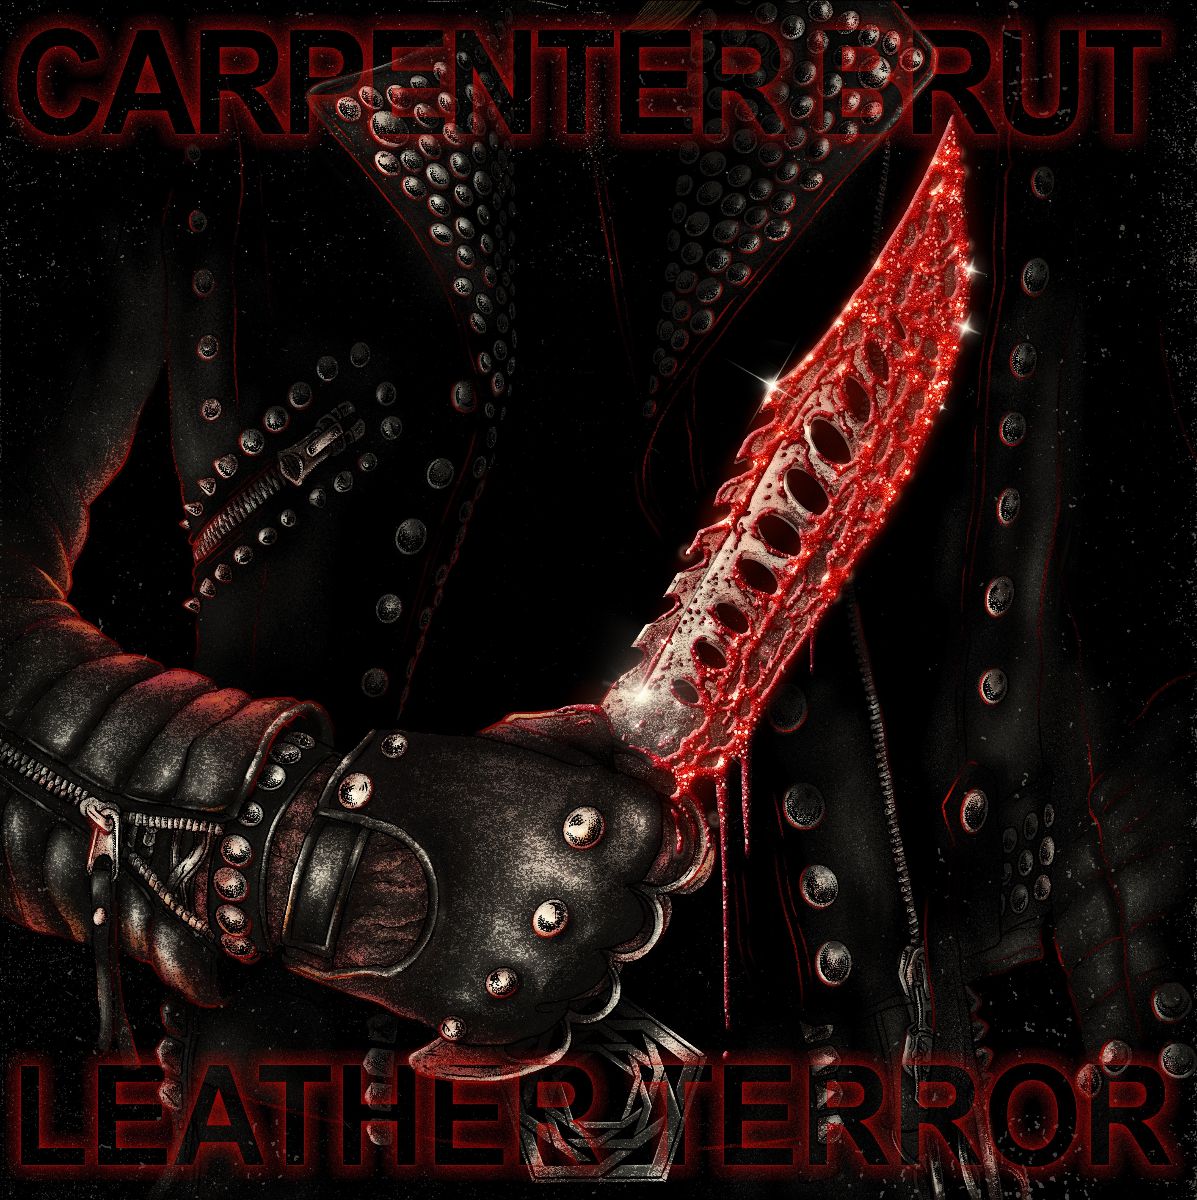 Carpenter Brut featuring Persha — Lipstick Masquerade cover artwork